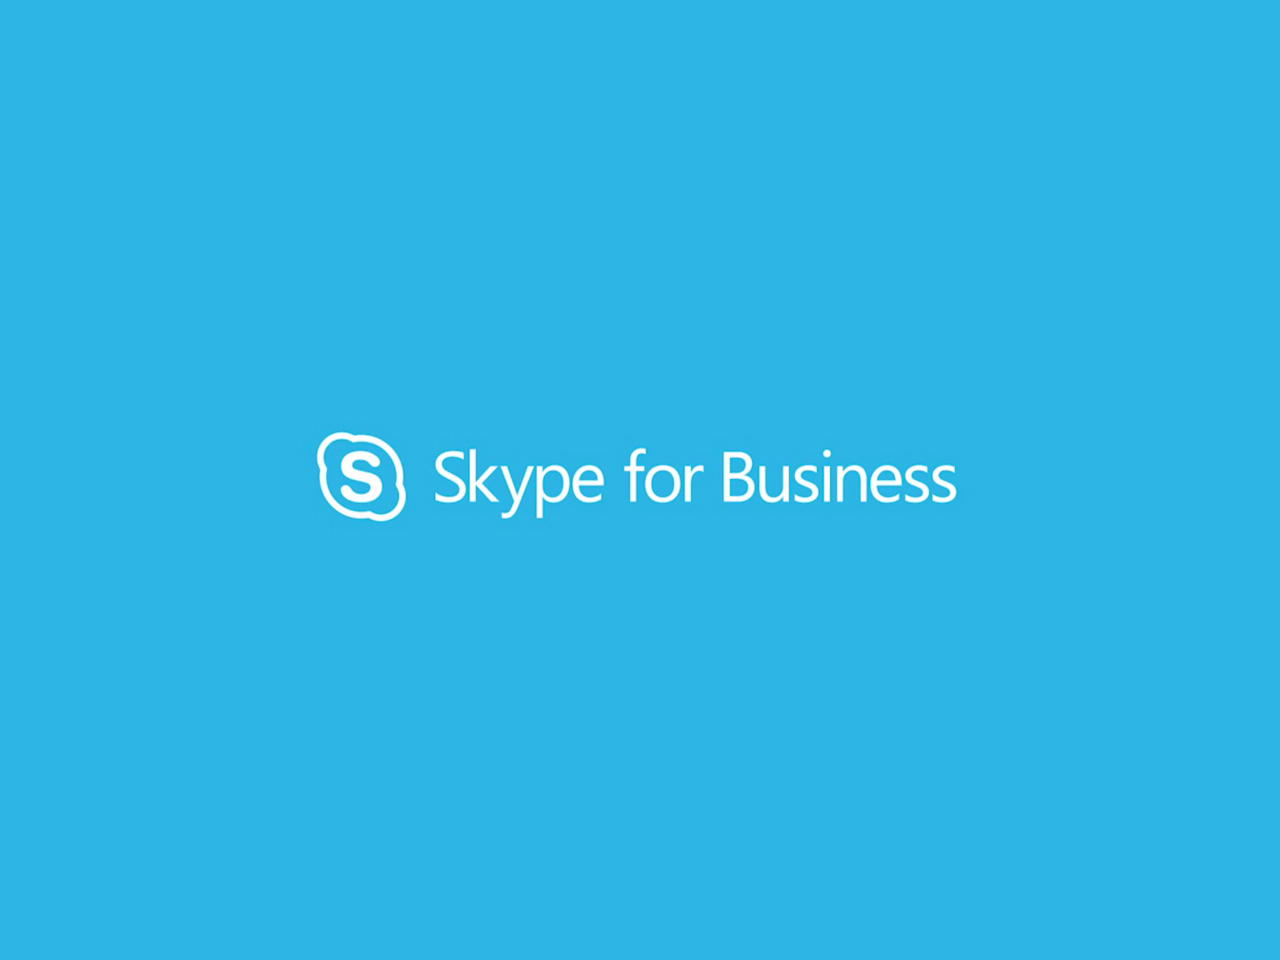 skype for business mac yosemite 10.10 download